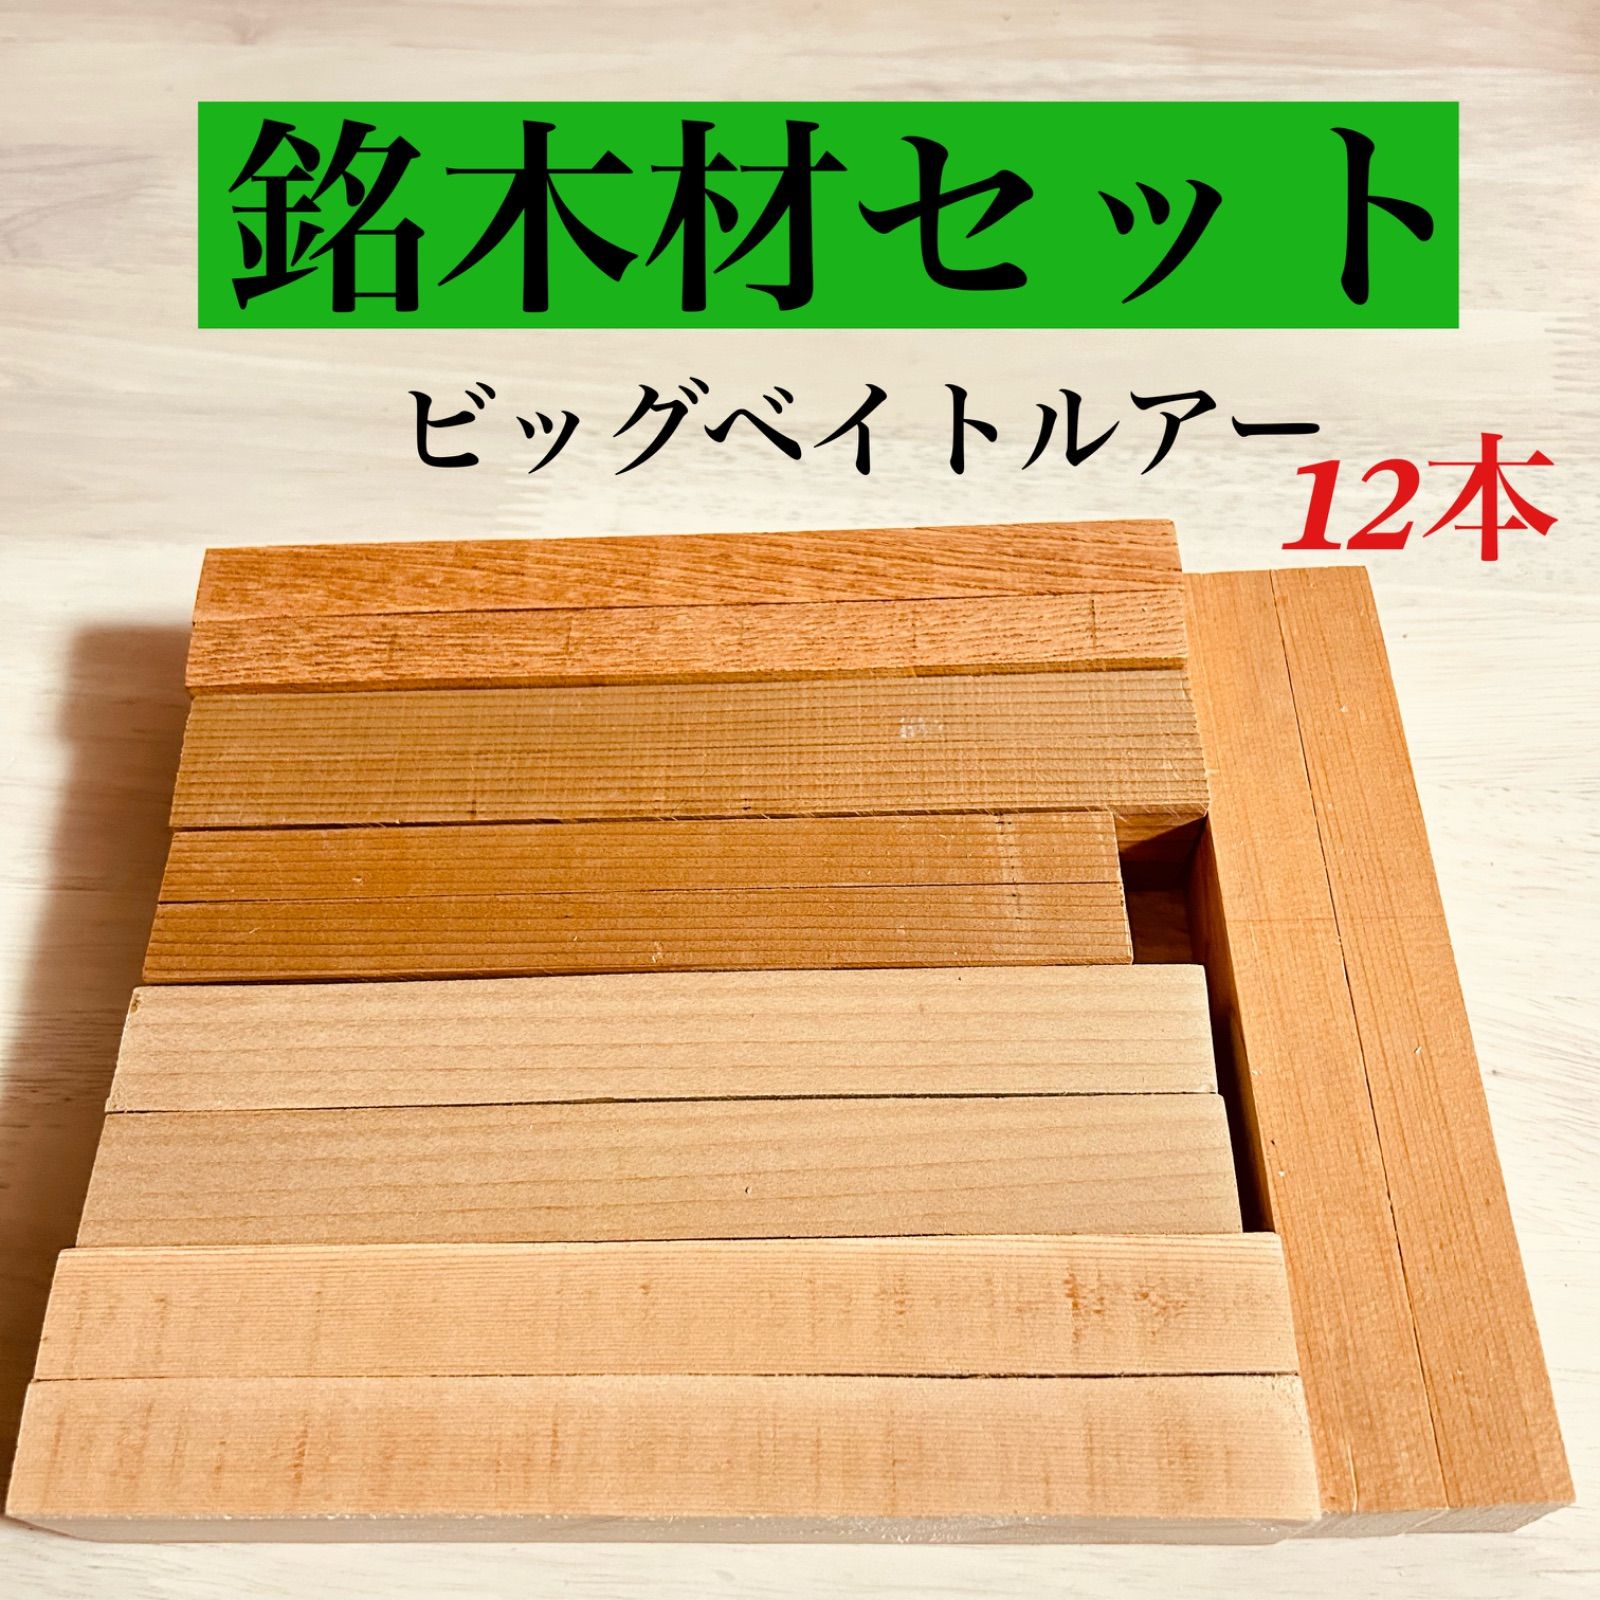 木曽ひのきのまな板(202) - 調理器具